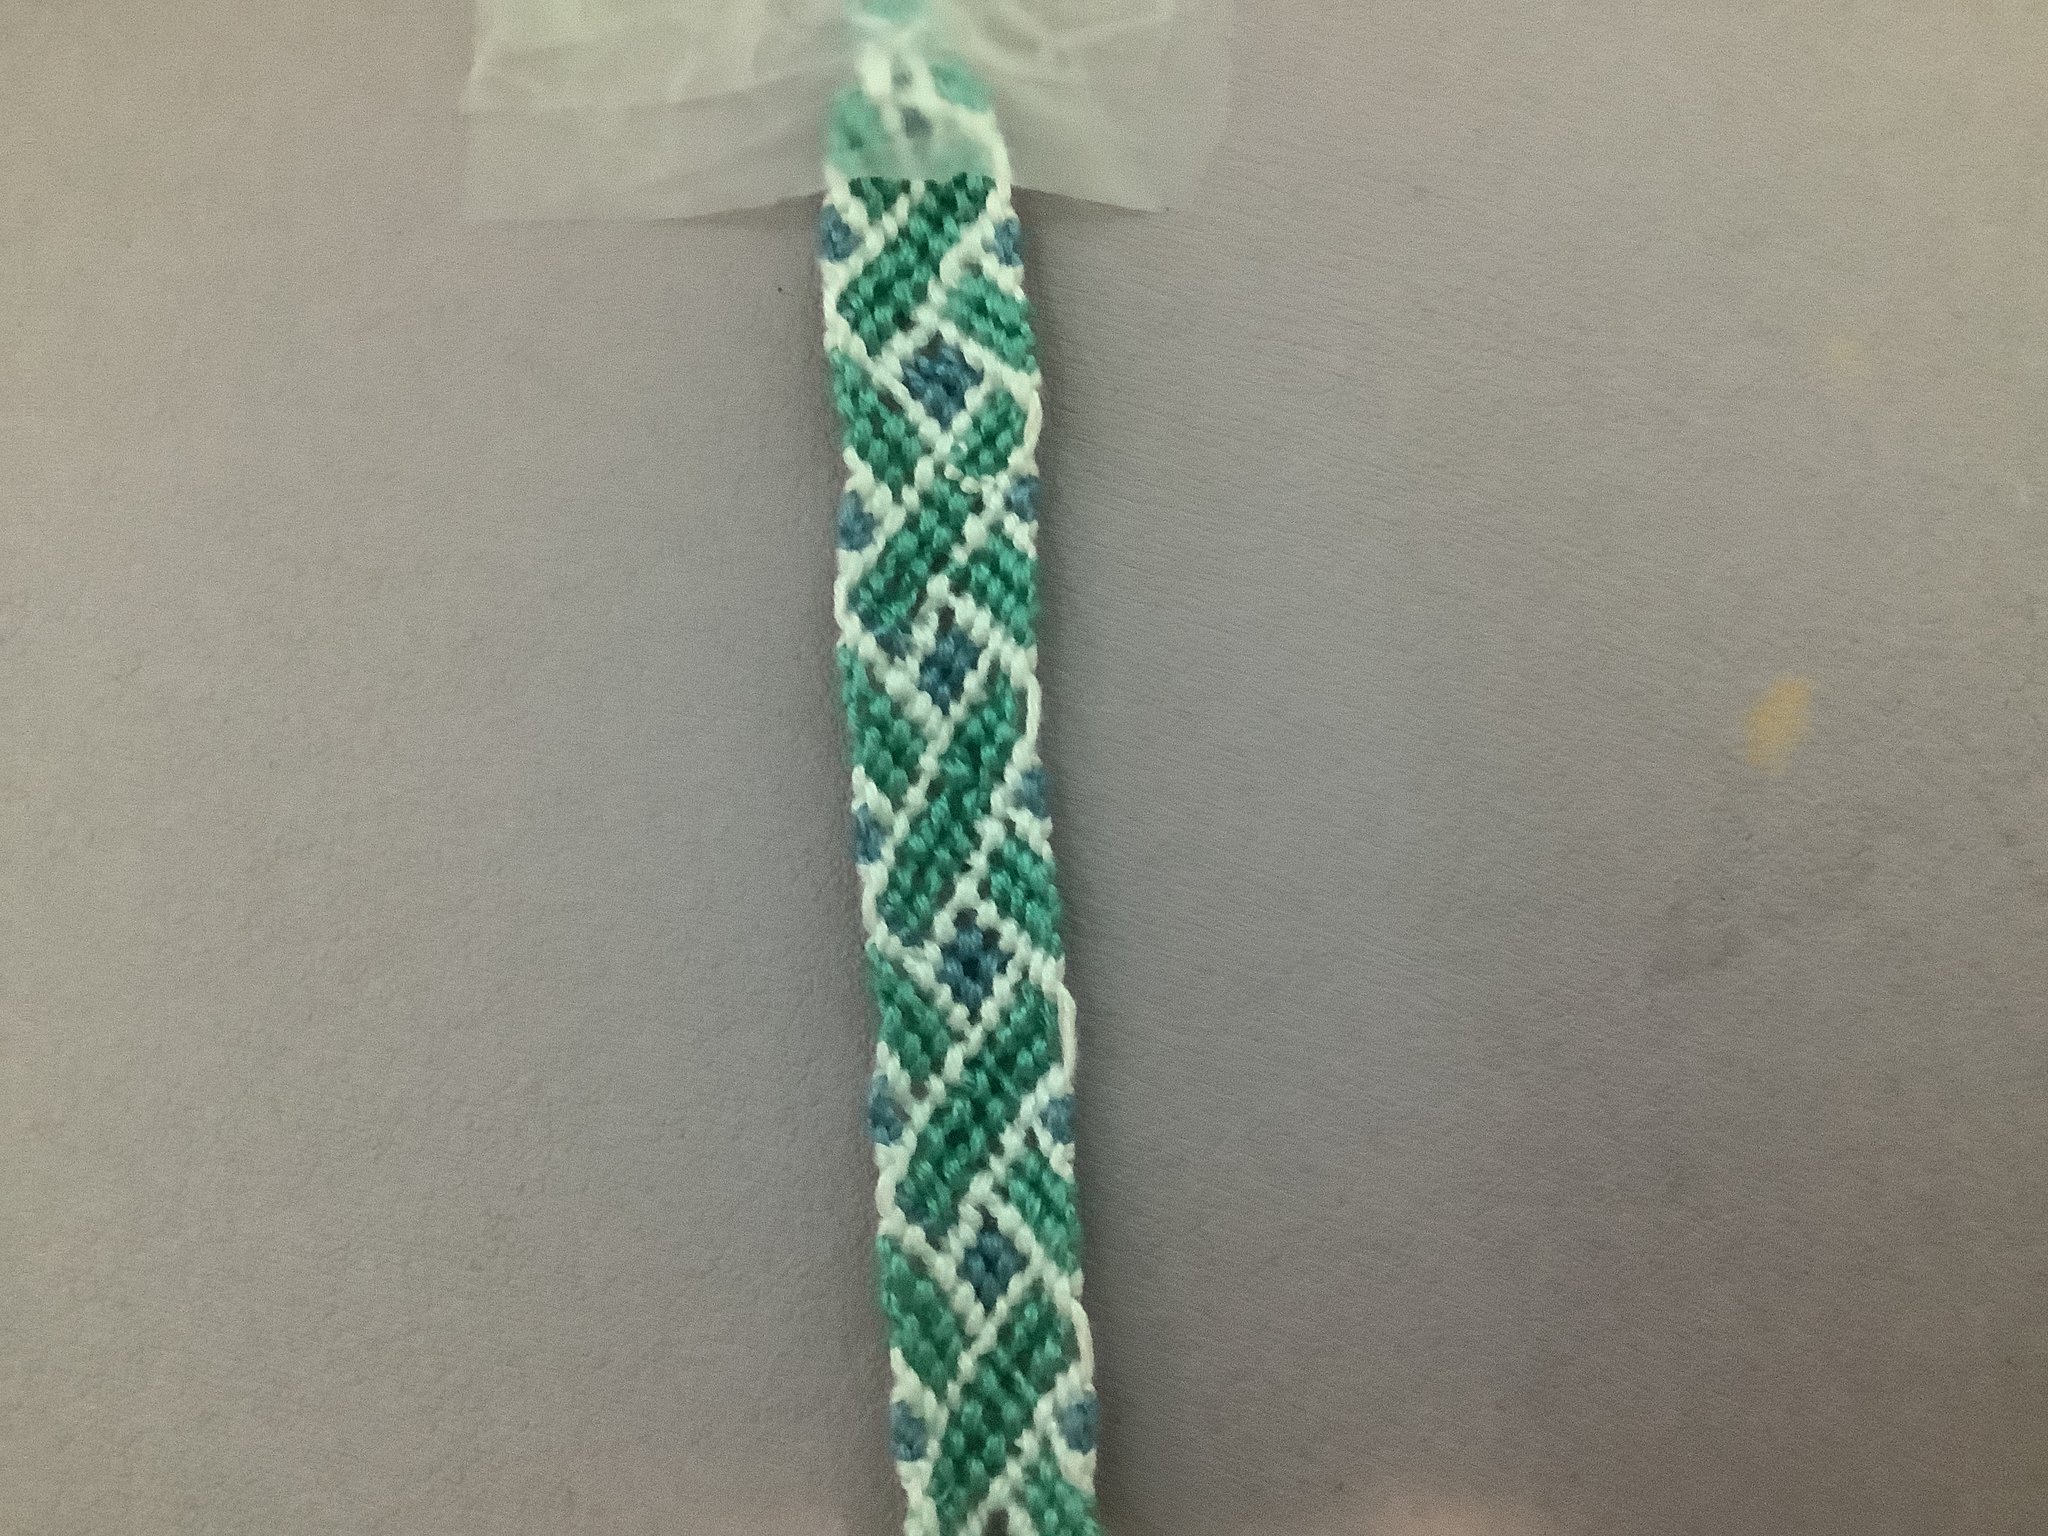 Ribbon Swirl Weave Macrame Friendship Bracelets